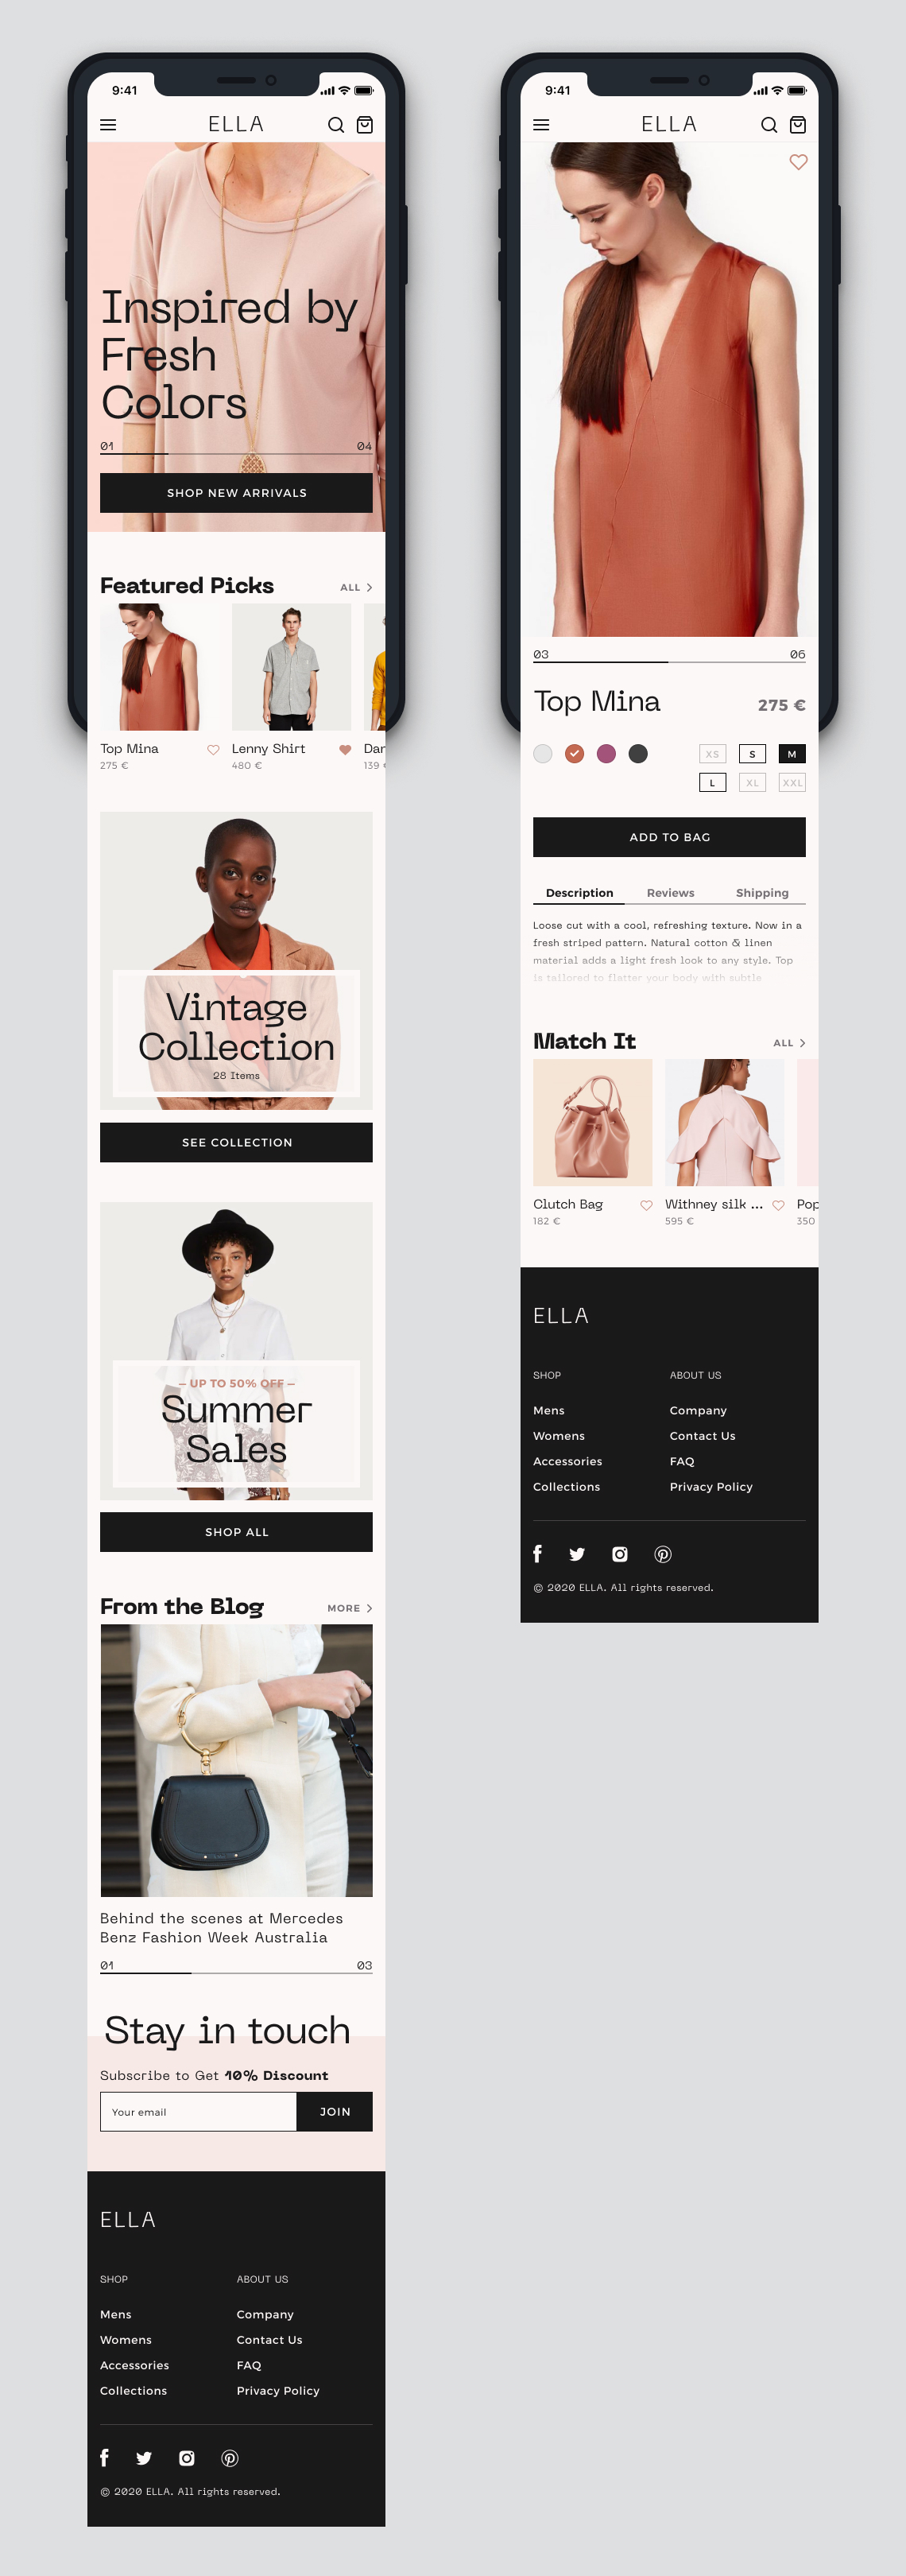 ELLA — Online fashion store redesign